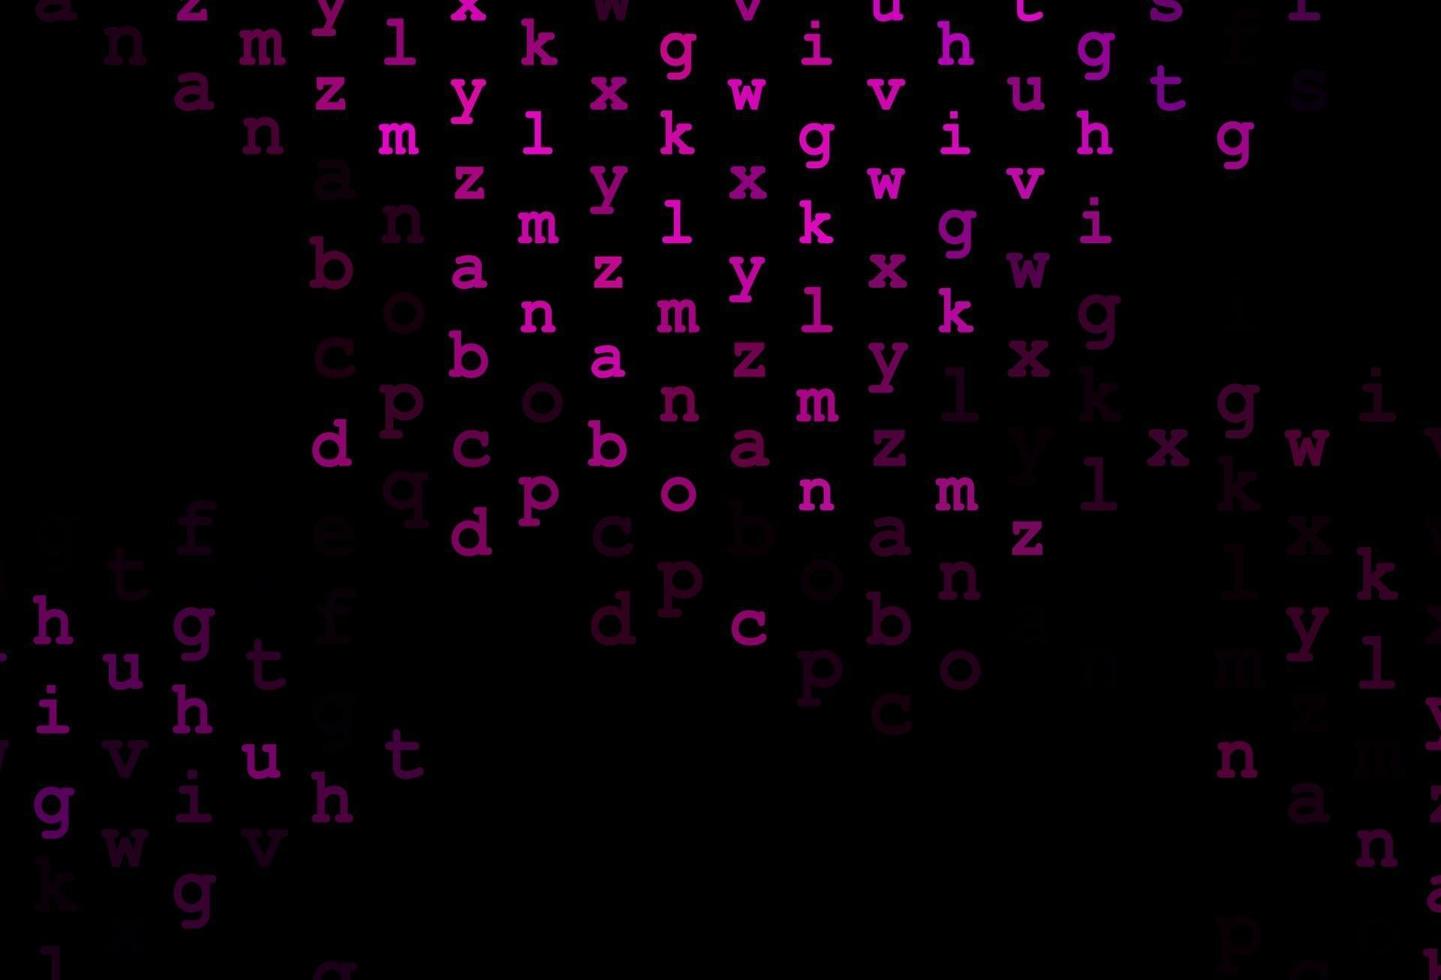 modelo de vetor roxo escuro com letras isoladas.